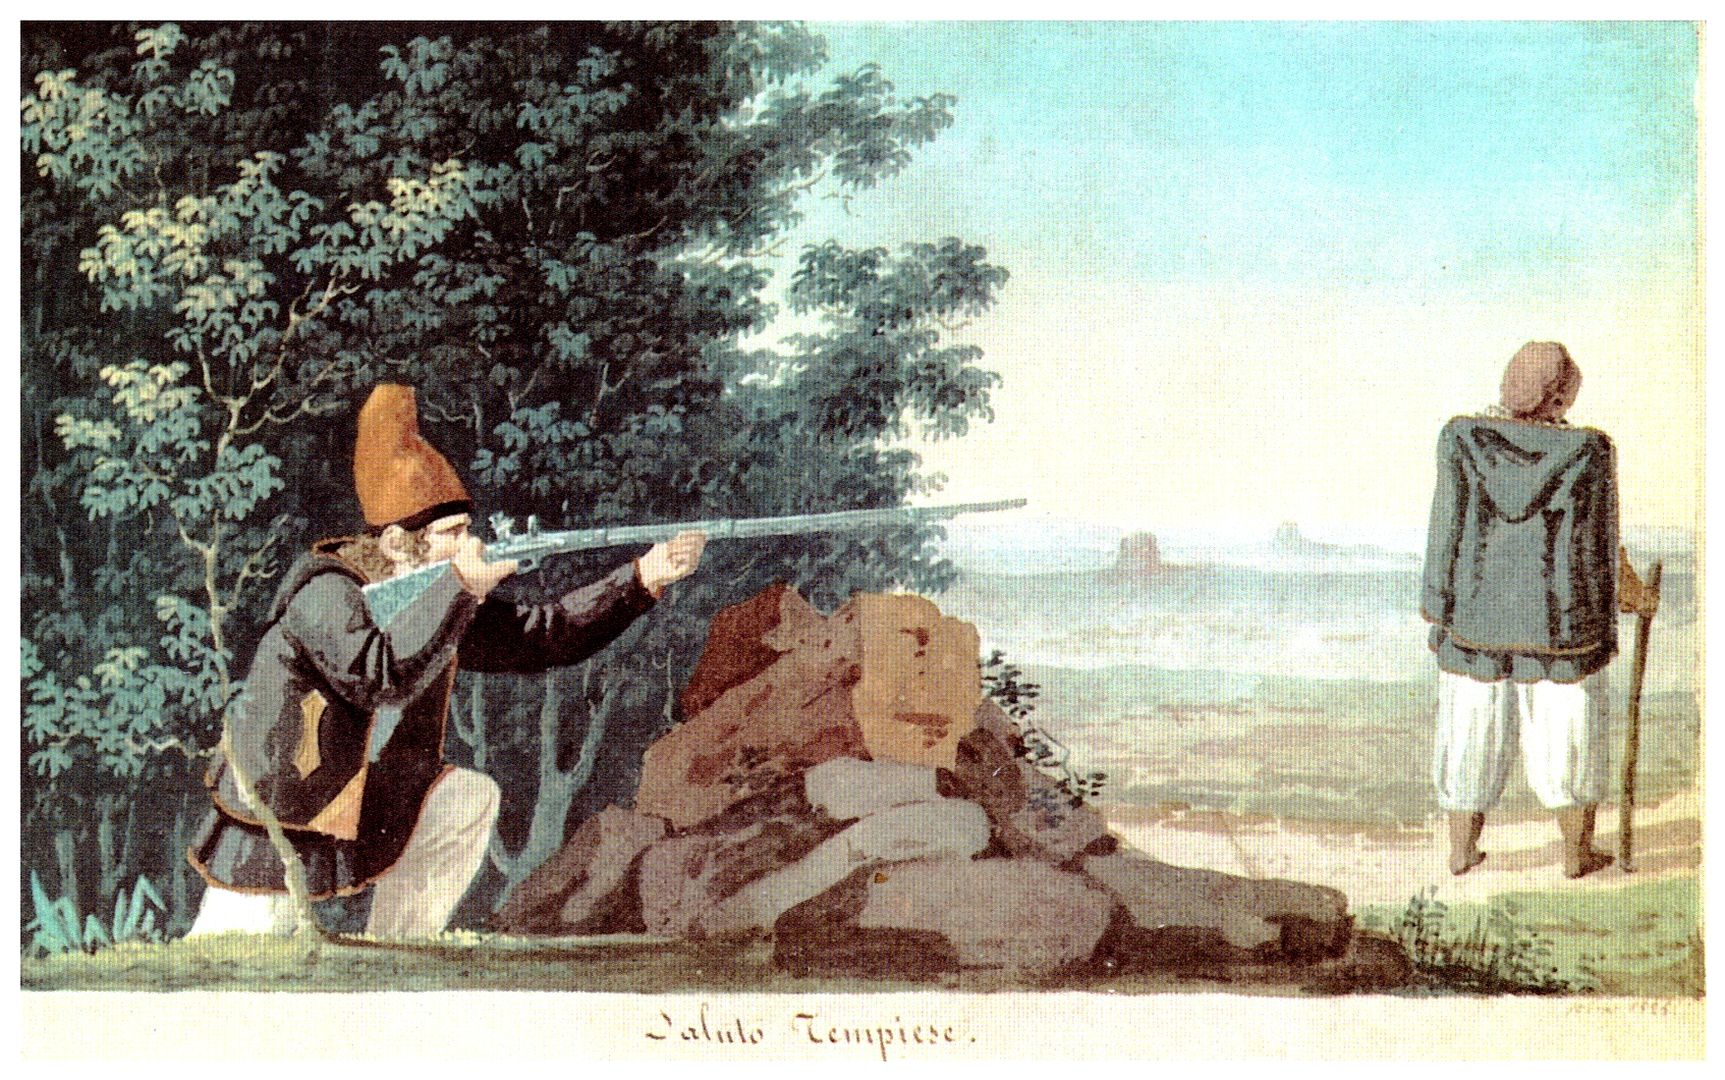 Giuseppe Cominotti - saluto tempiese, 1825